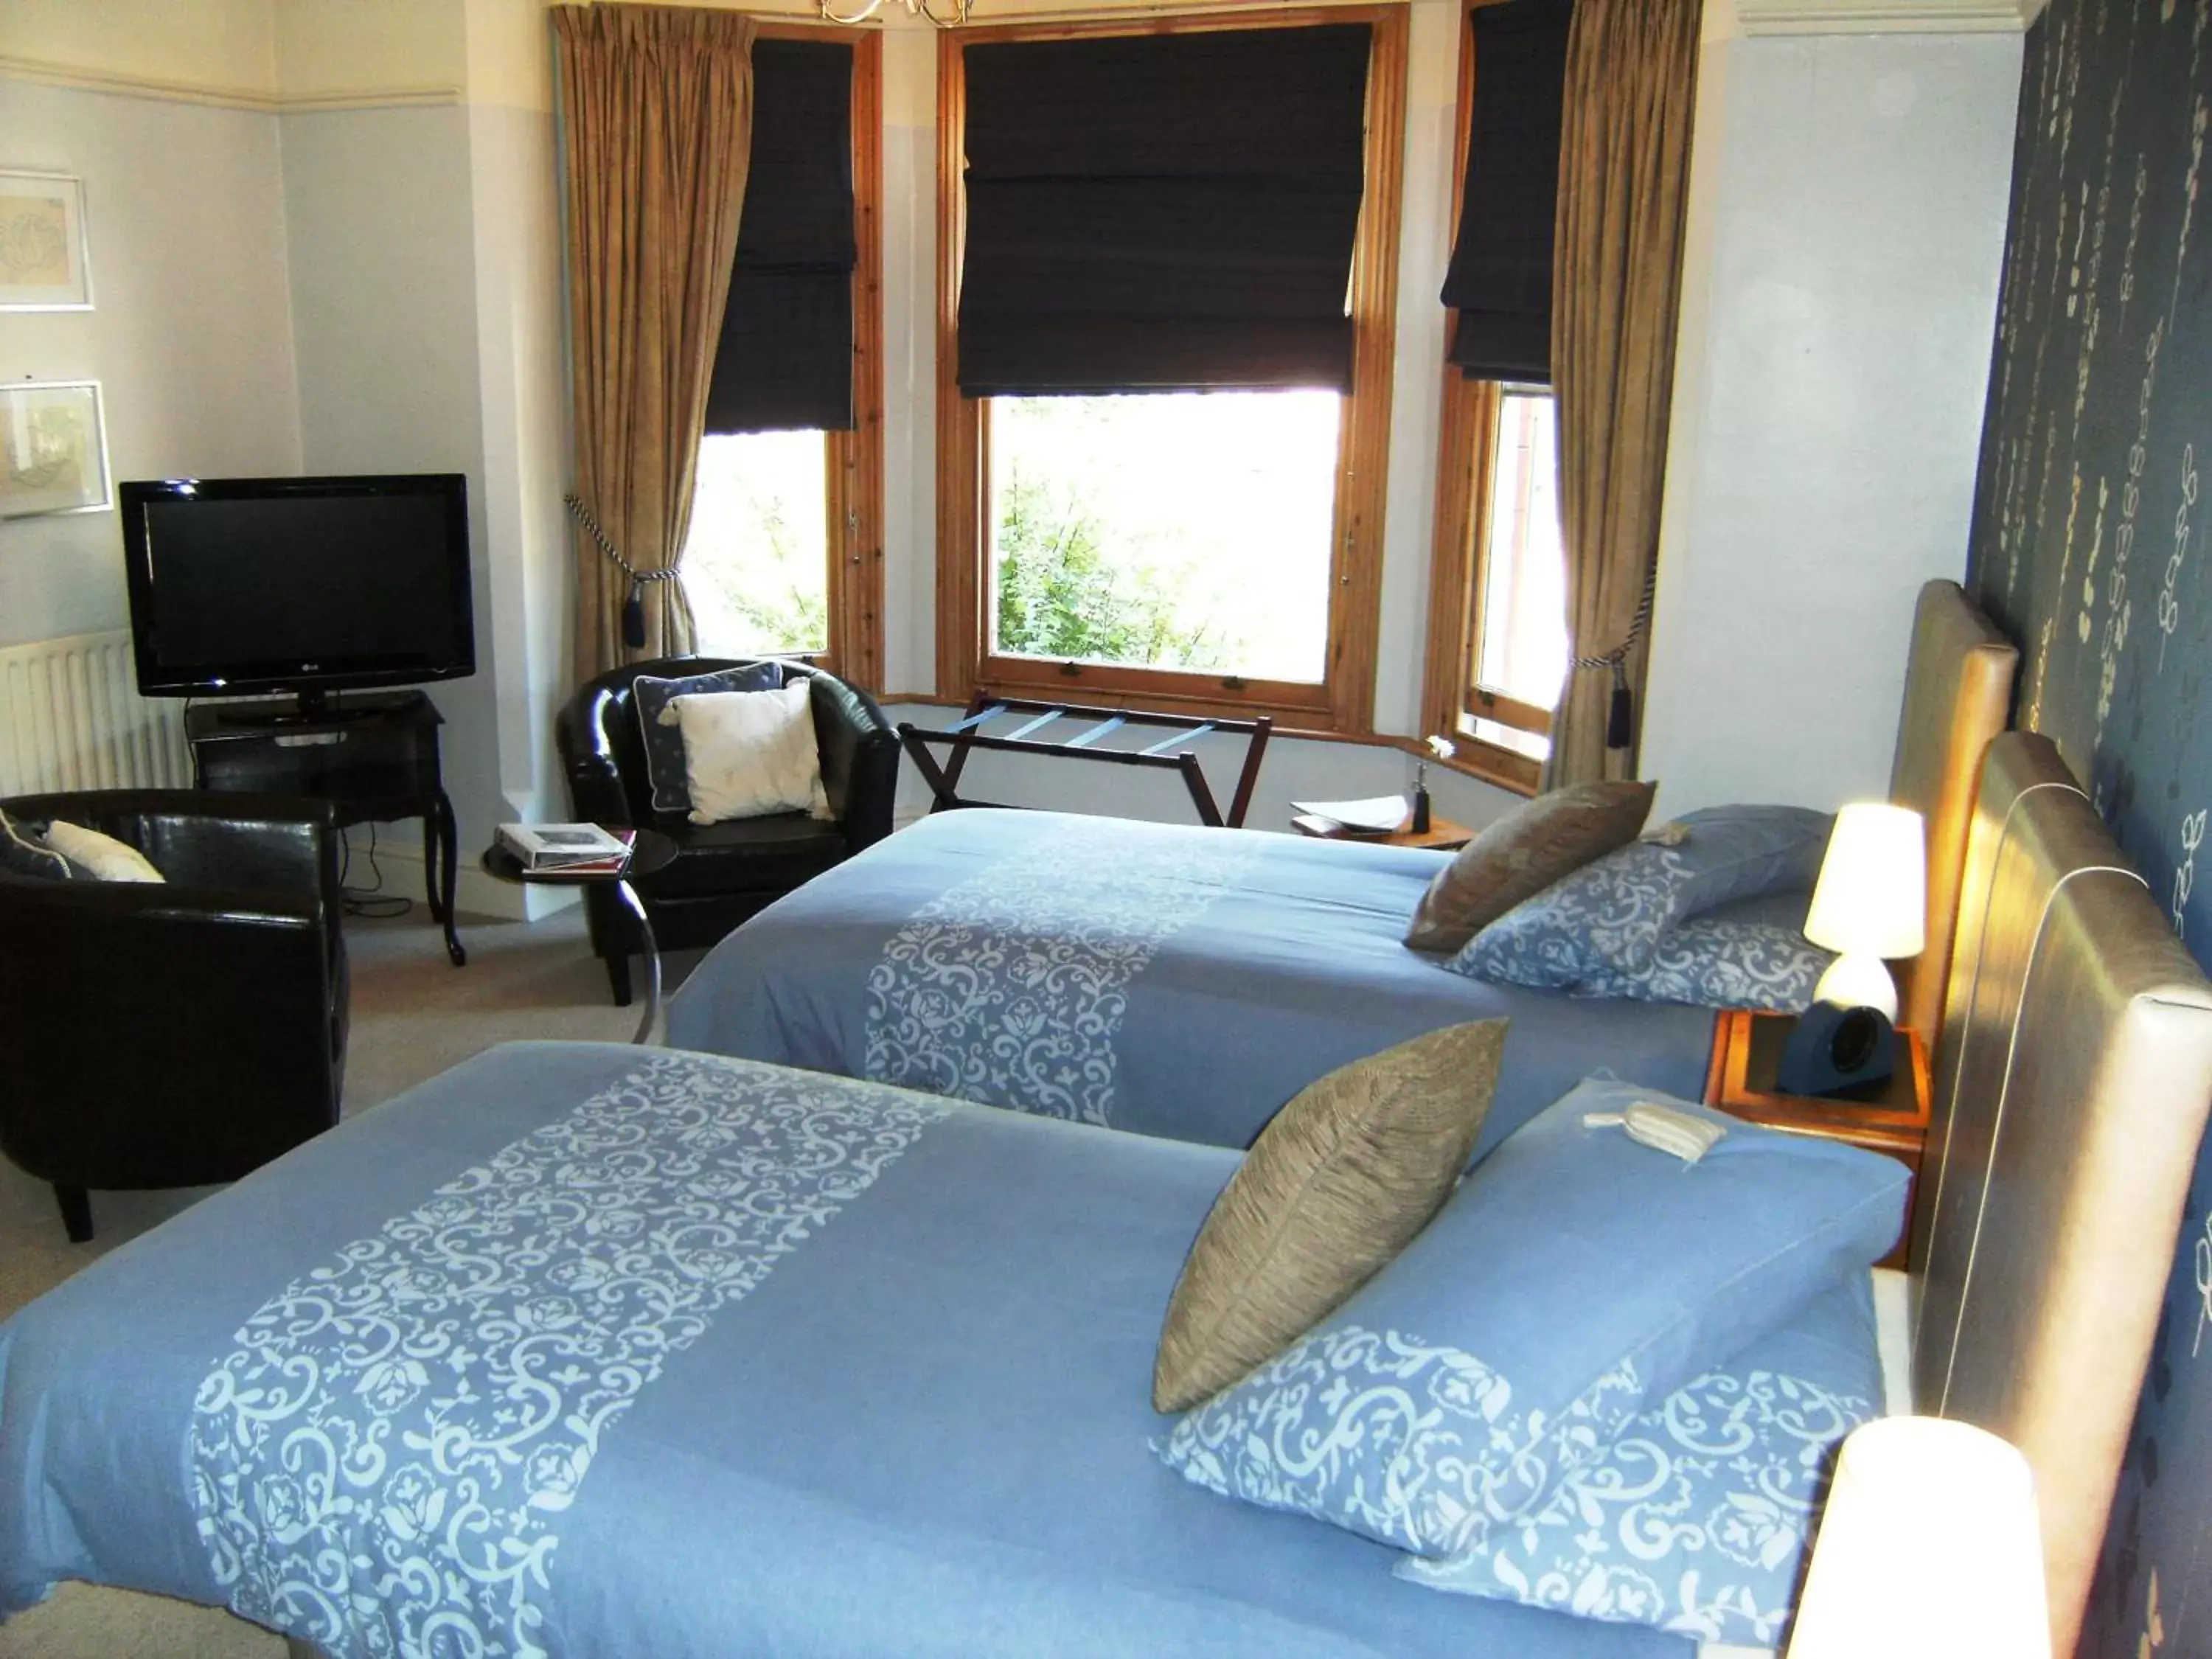 Deluxe Twin Room in Bridge House Bed & Breakfast